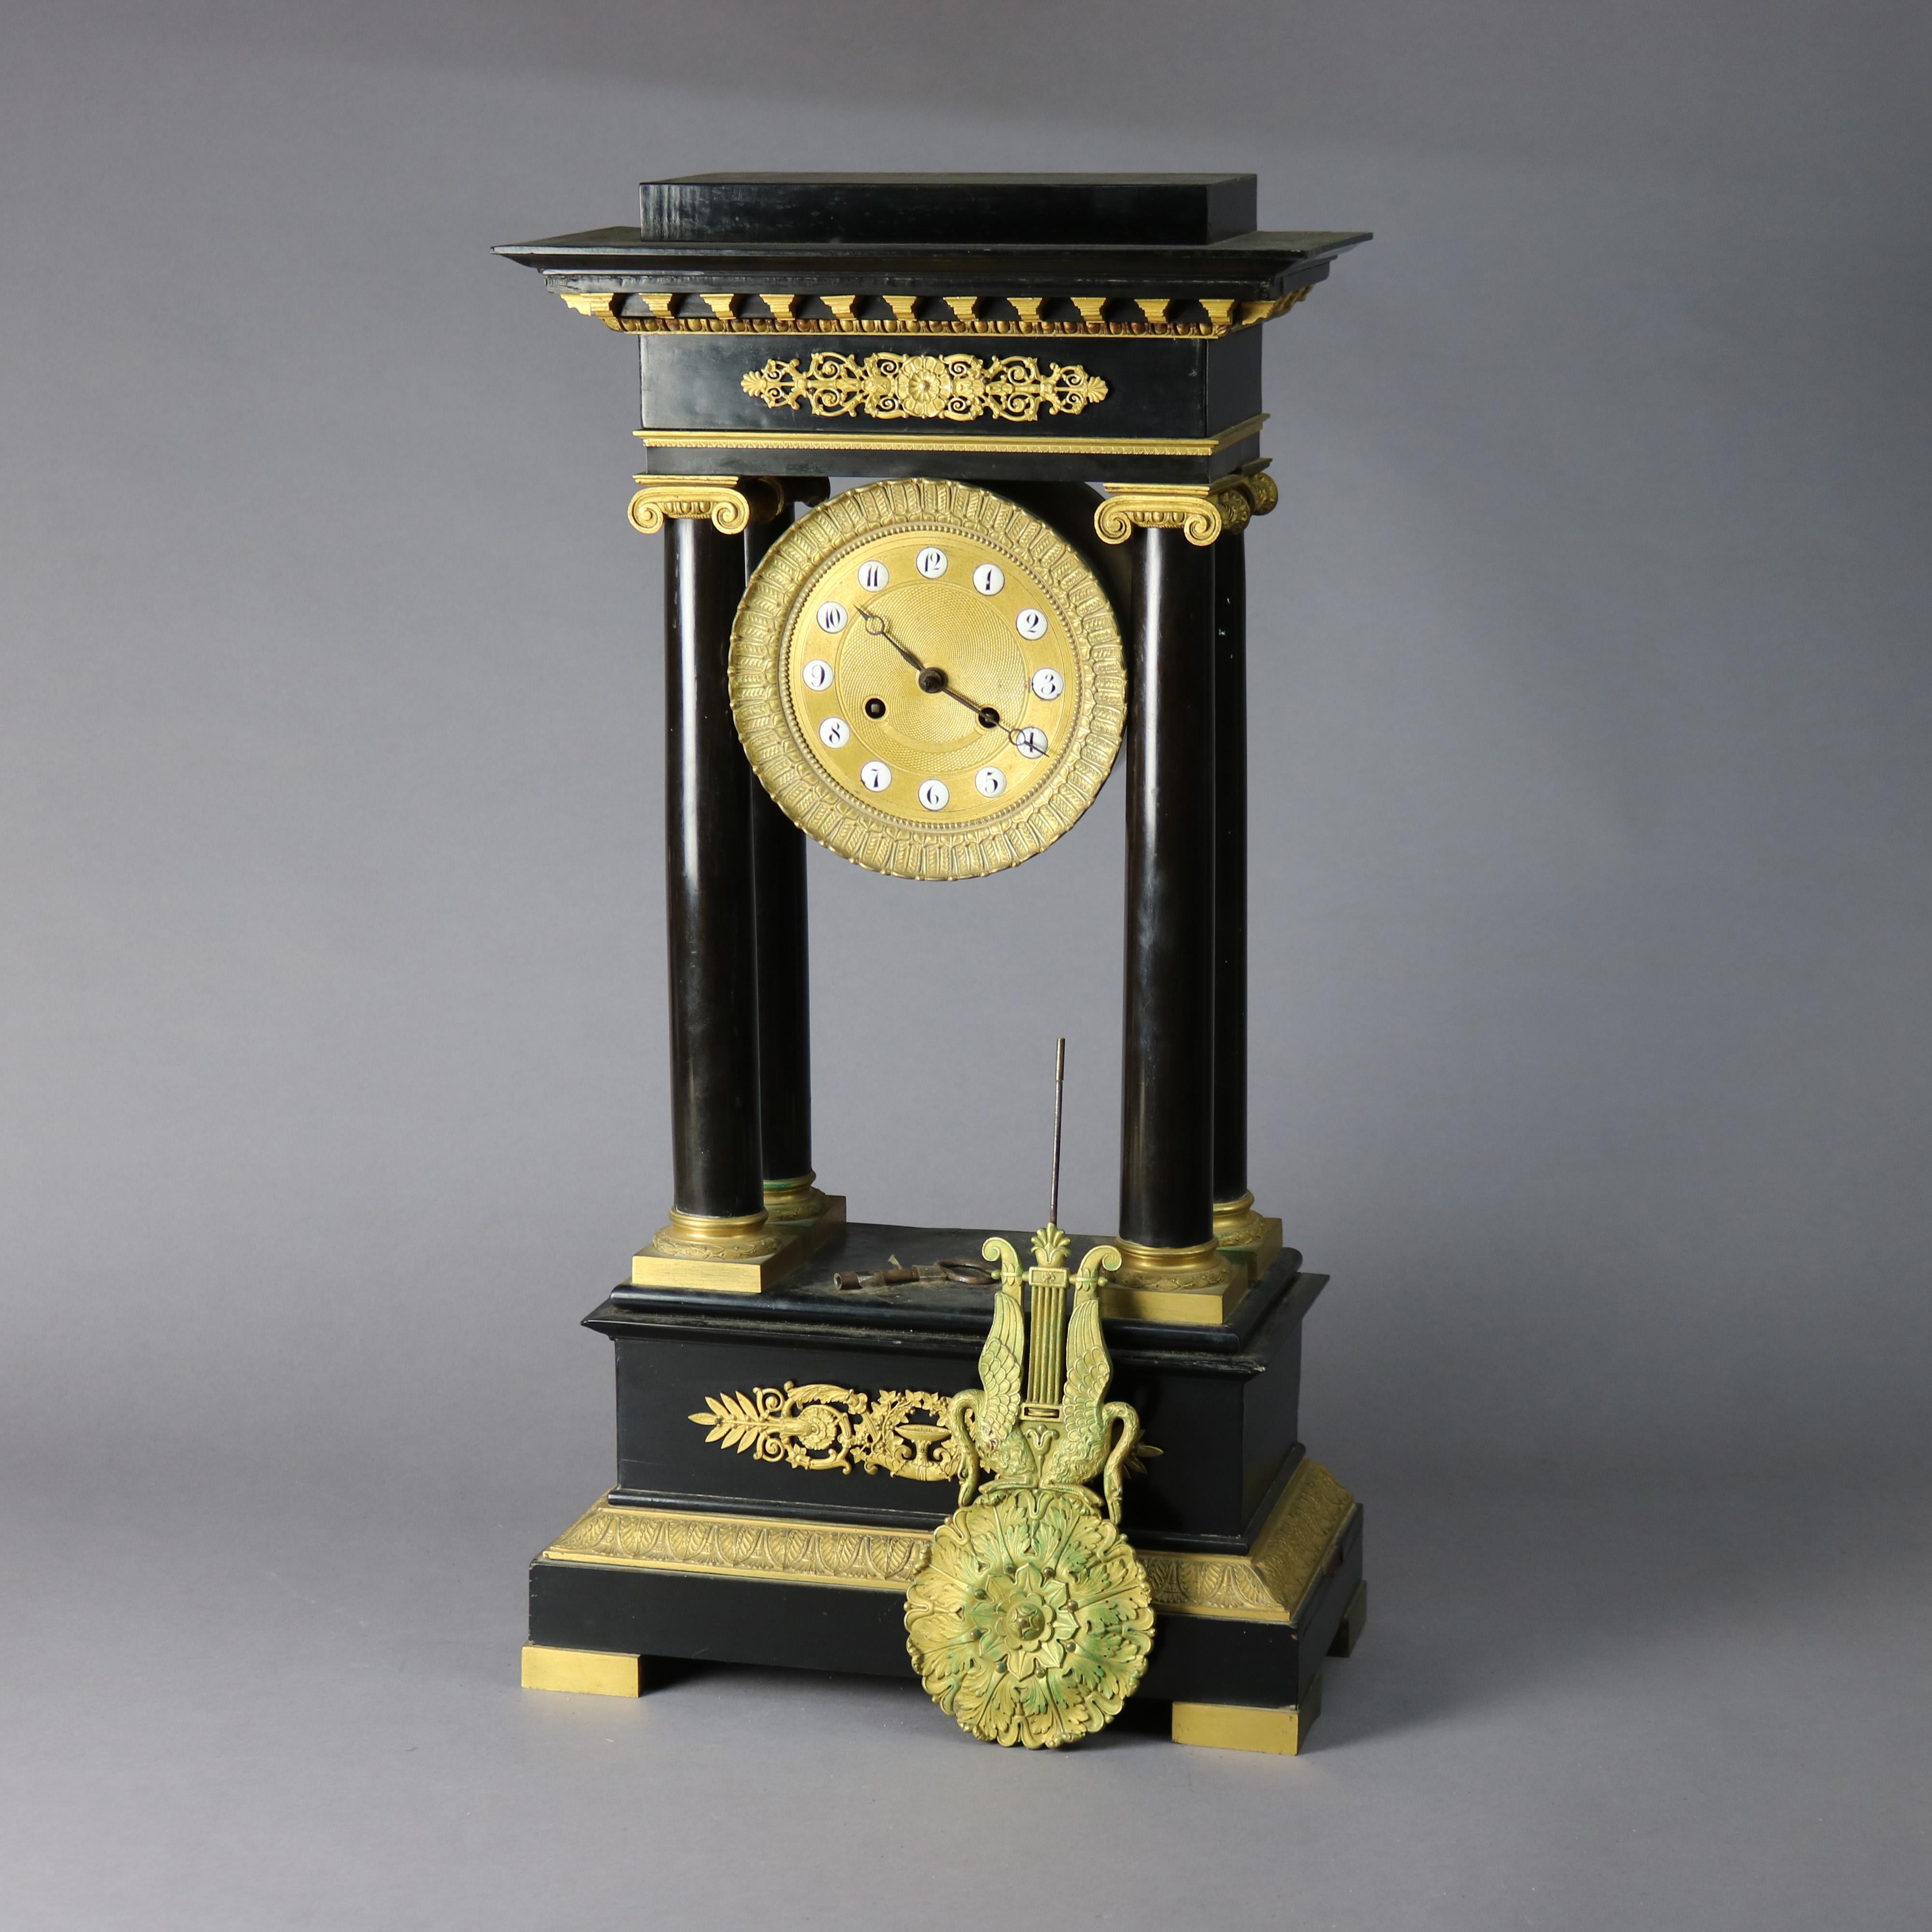 Une ancienne horloge à portique de style Empire français offre une construction ébonisée avec quatre supports de colonnes corinthiennes et des montures en bronze doré à feuillage partout, clé telle que photographiée, vers 1820.

Dimensions - 25,75